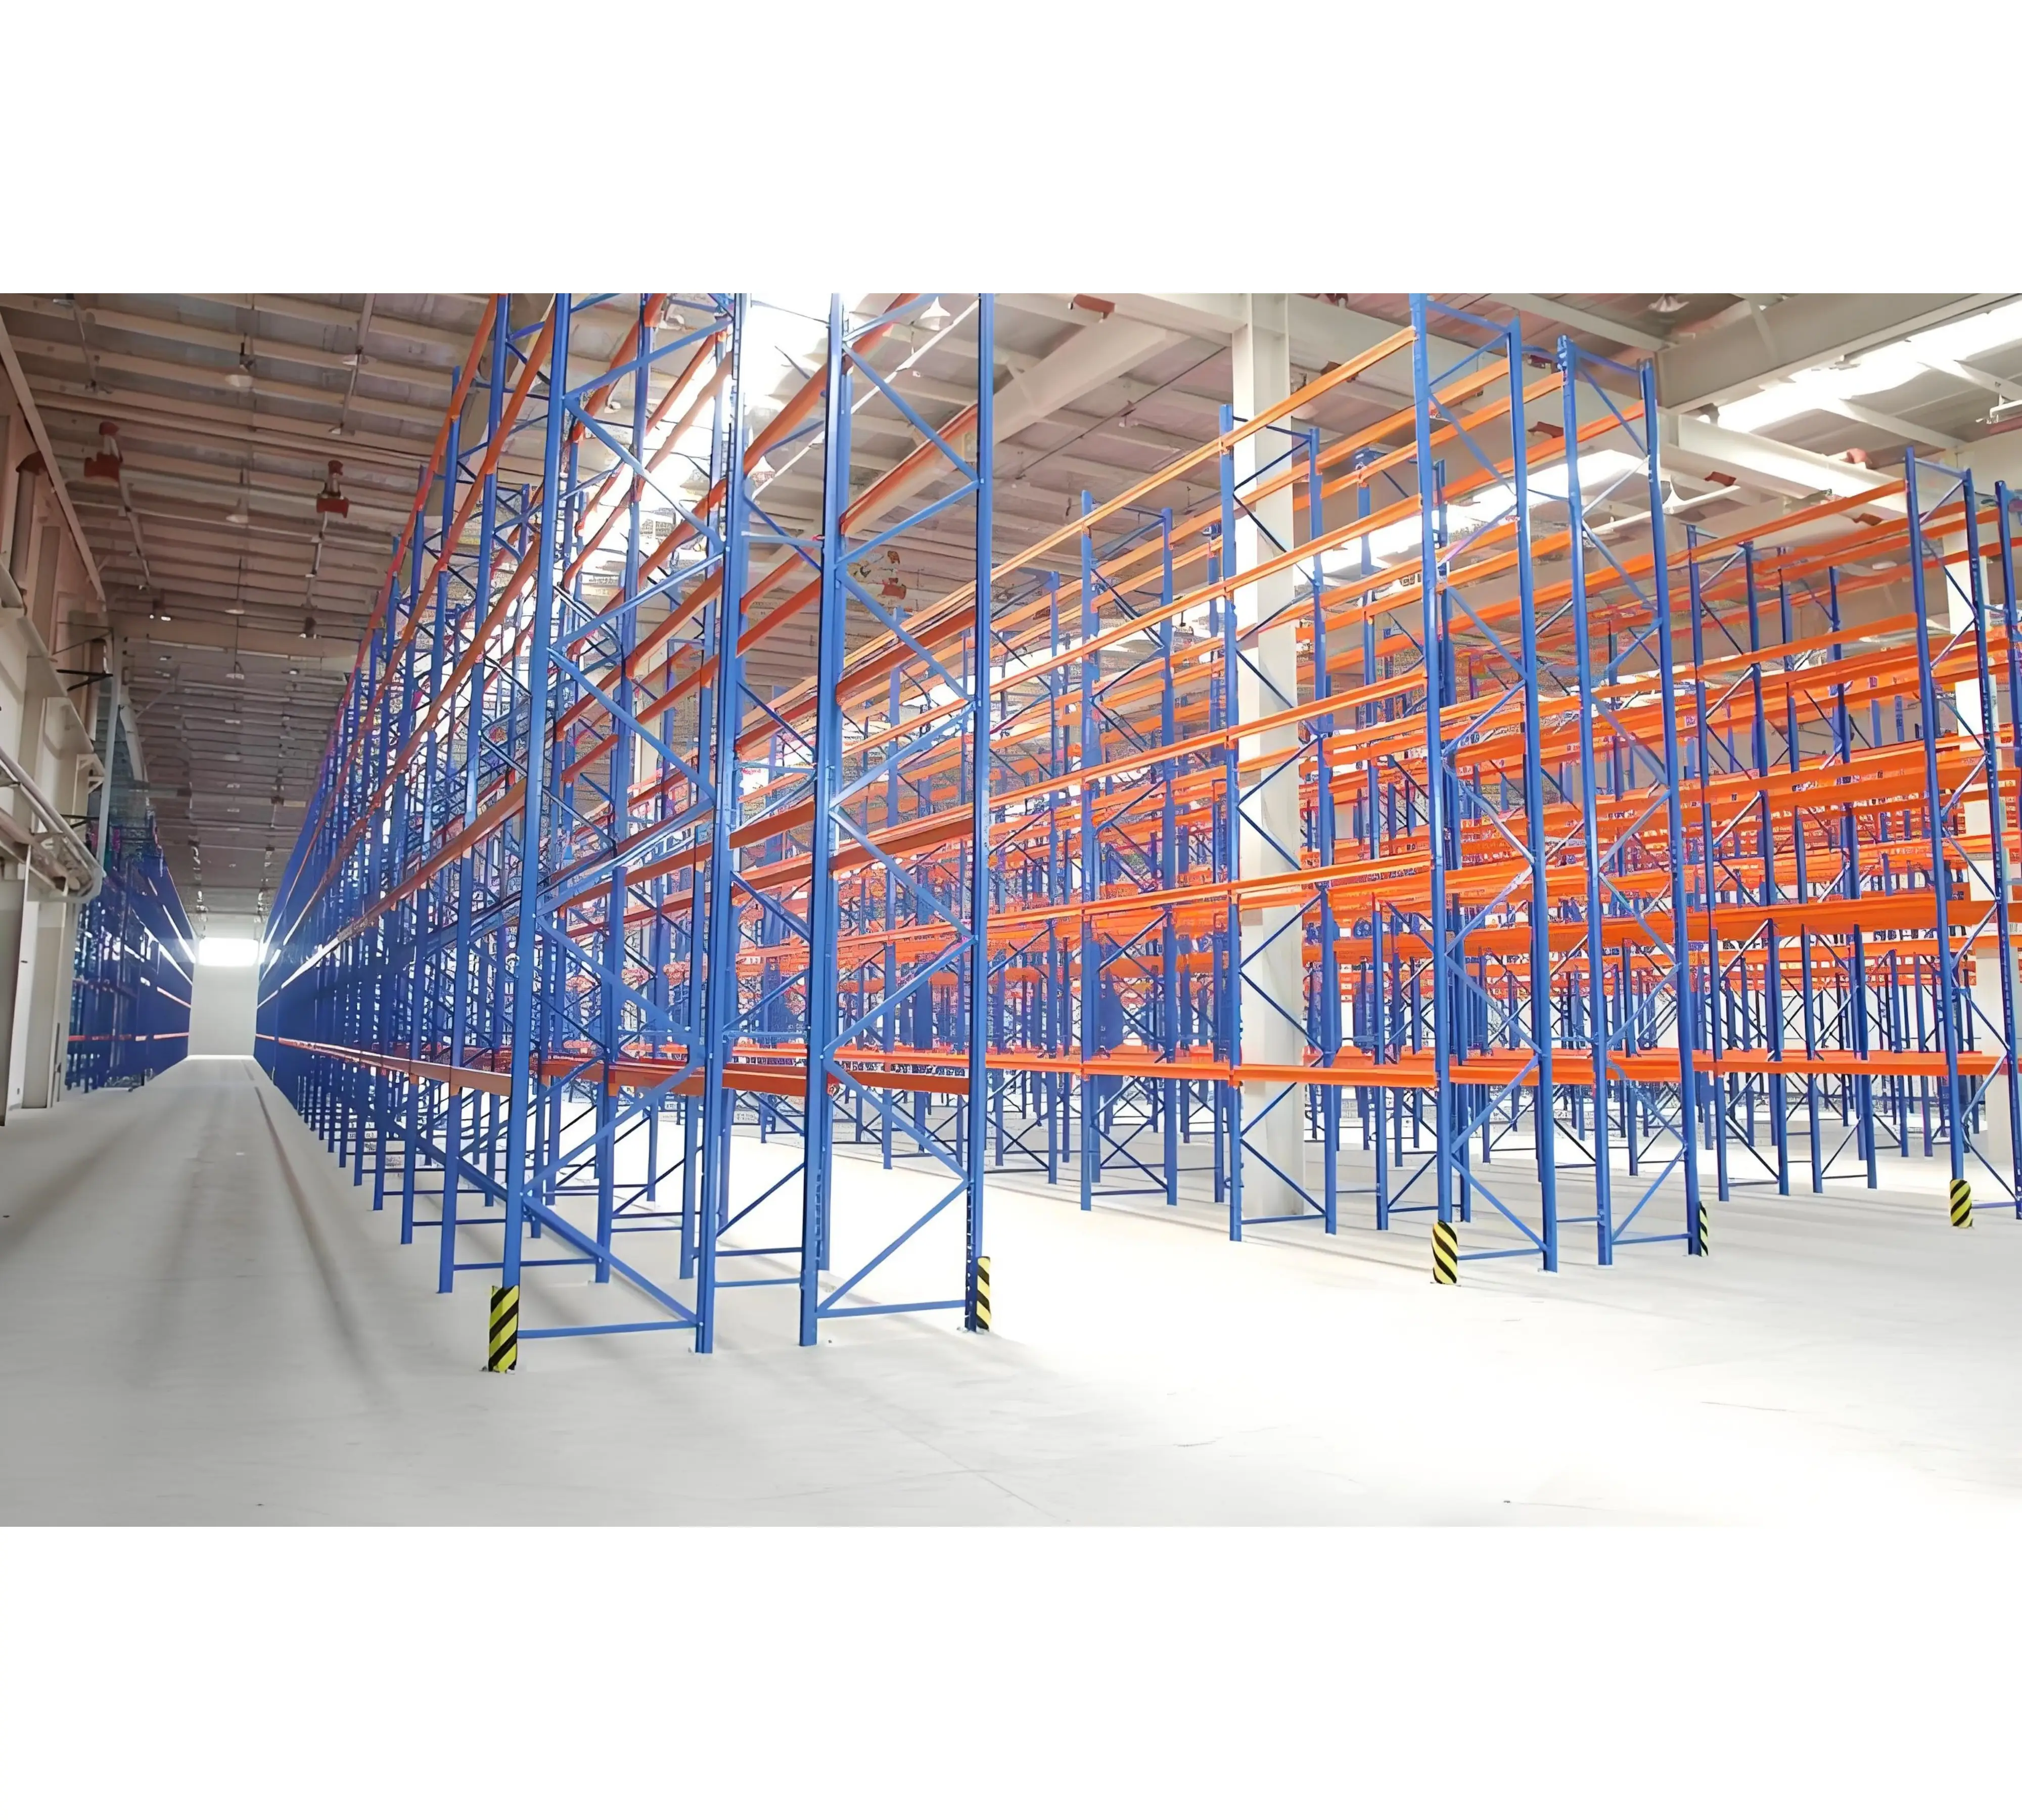 Prateleiras de empilhamento para armazéns Amazon de alta qualidade Prateleiras empilháveis ajustáveis para serviço pesado multicamadas